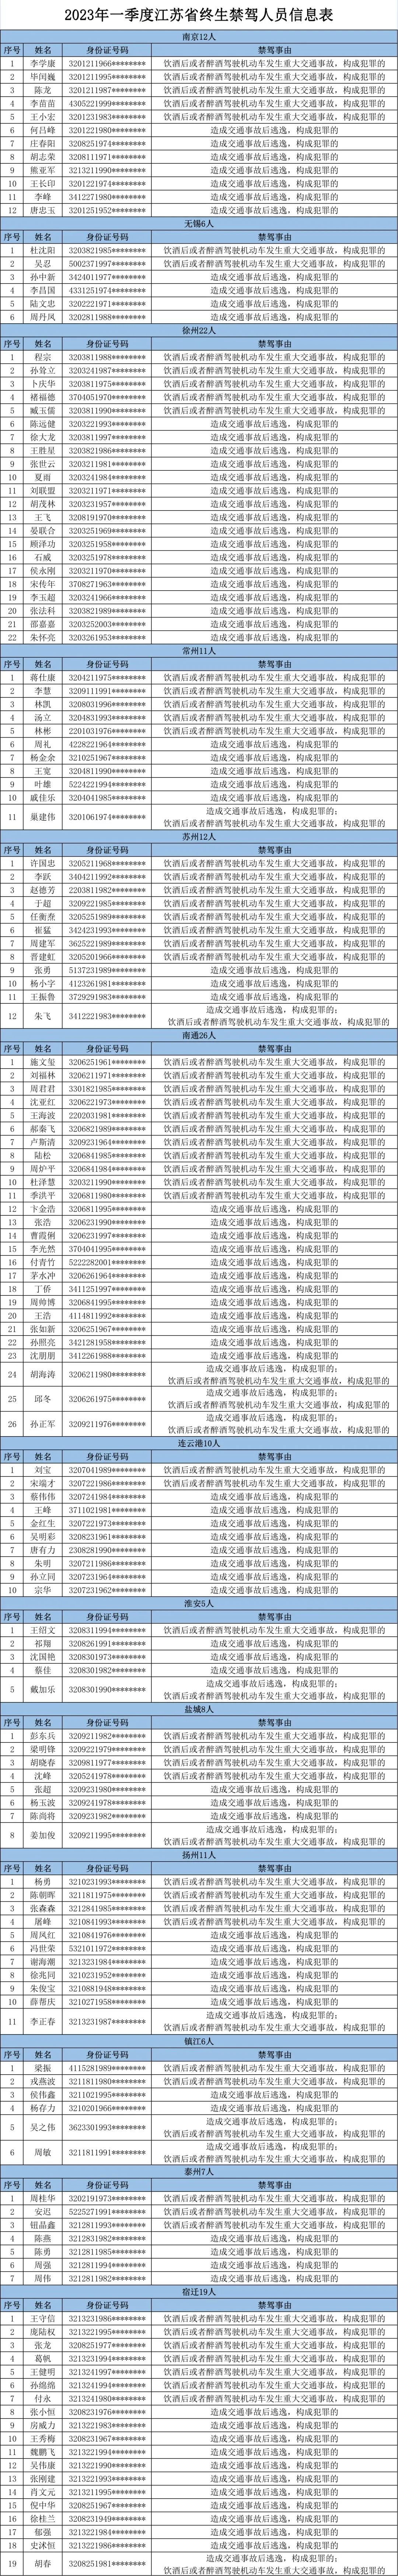 江苏交警曝光全省一季度155名终生禁驾人员名单，年龄最大73岁，年龄最小19岁 ...